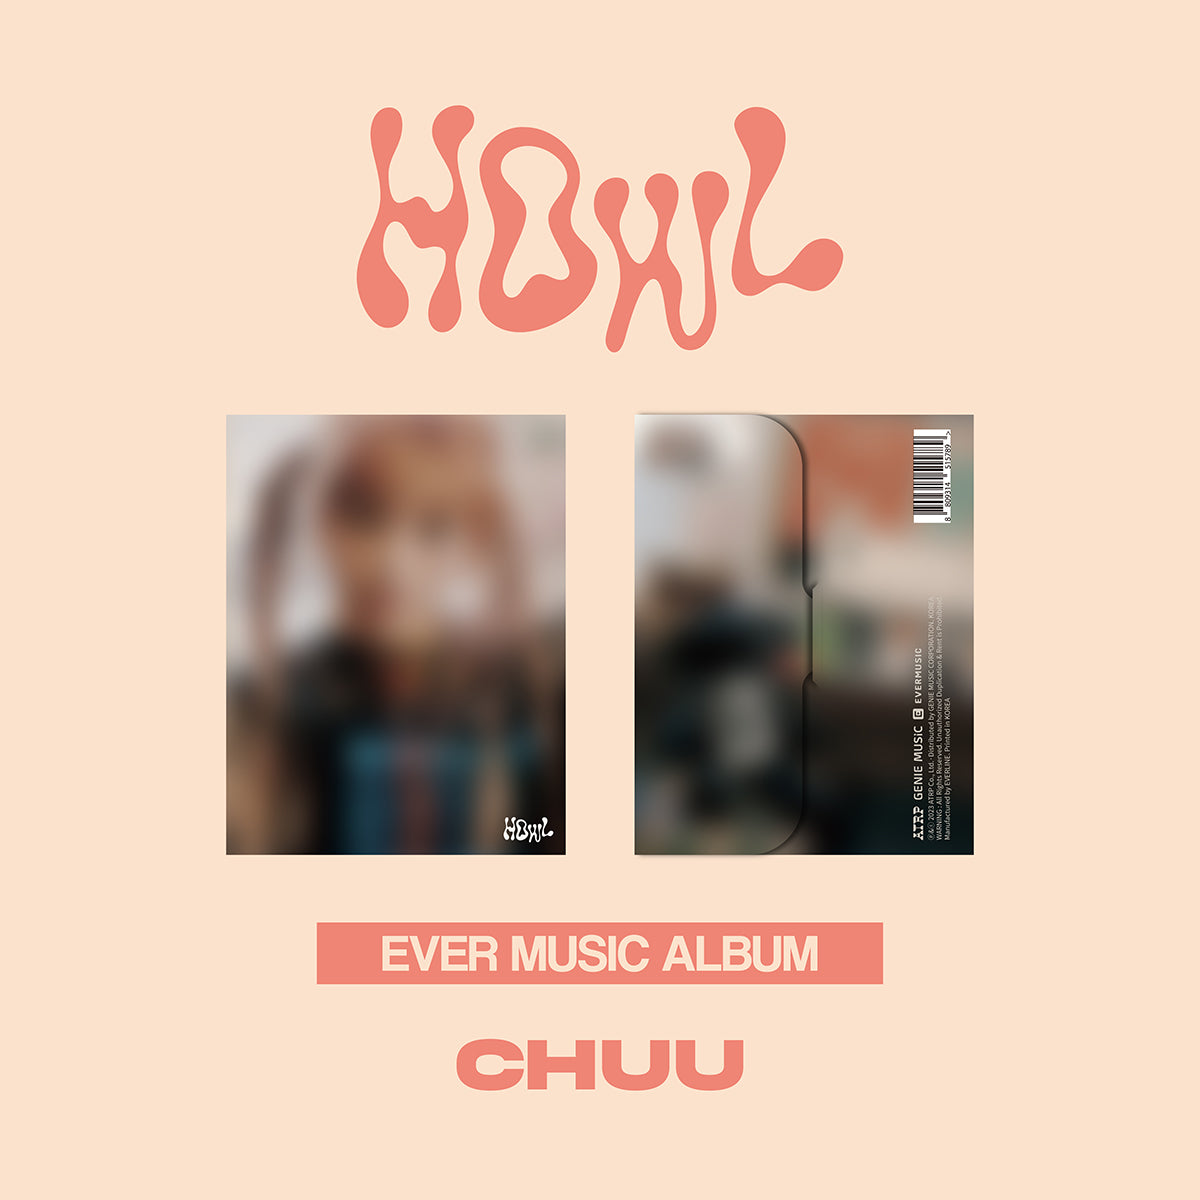 CHUU - Howl (EVER MUSIC ALBUM) [PRE-ORDER]